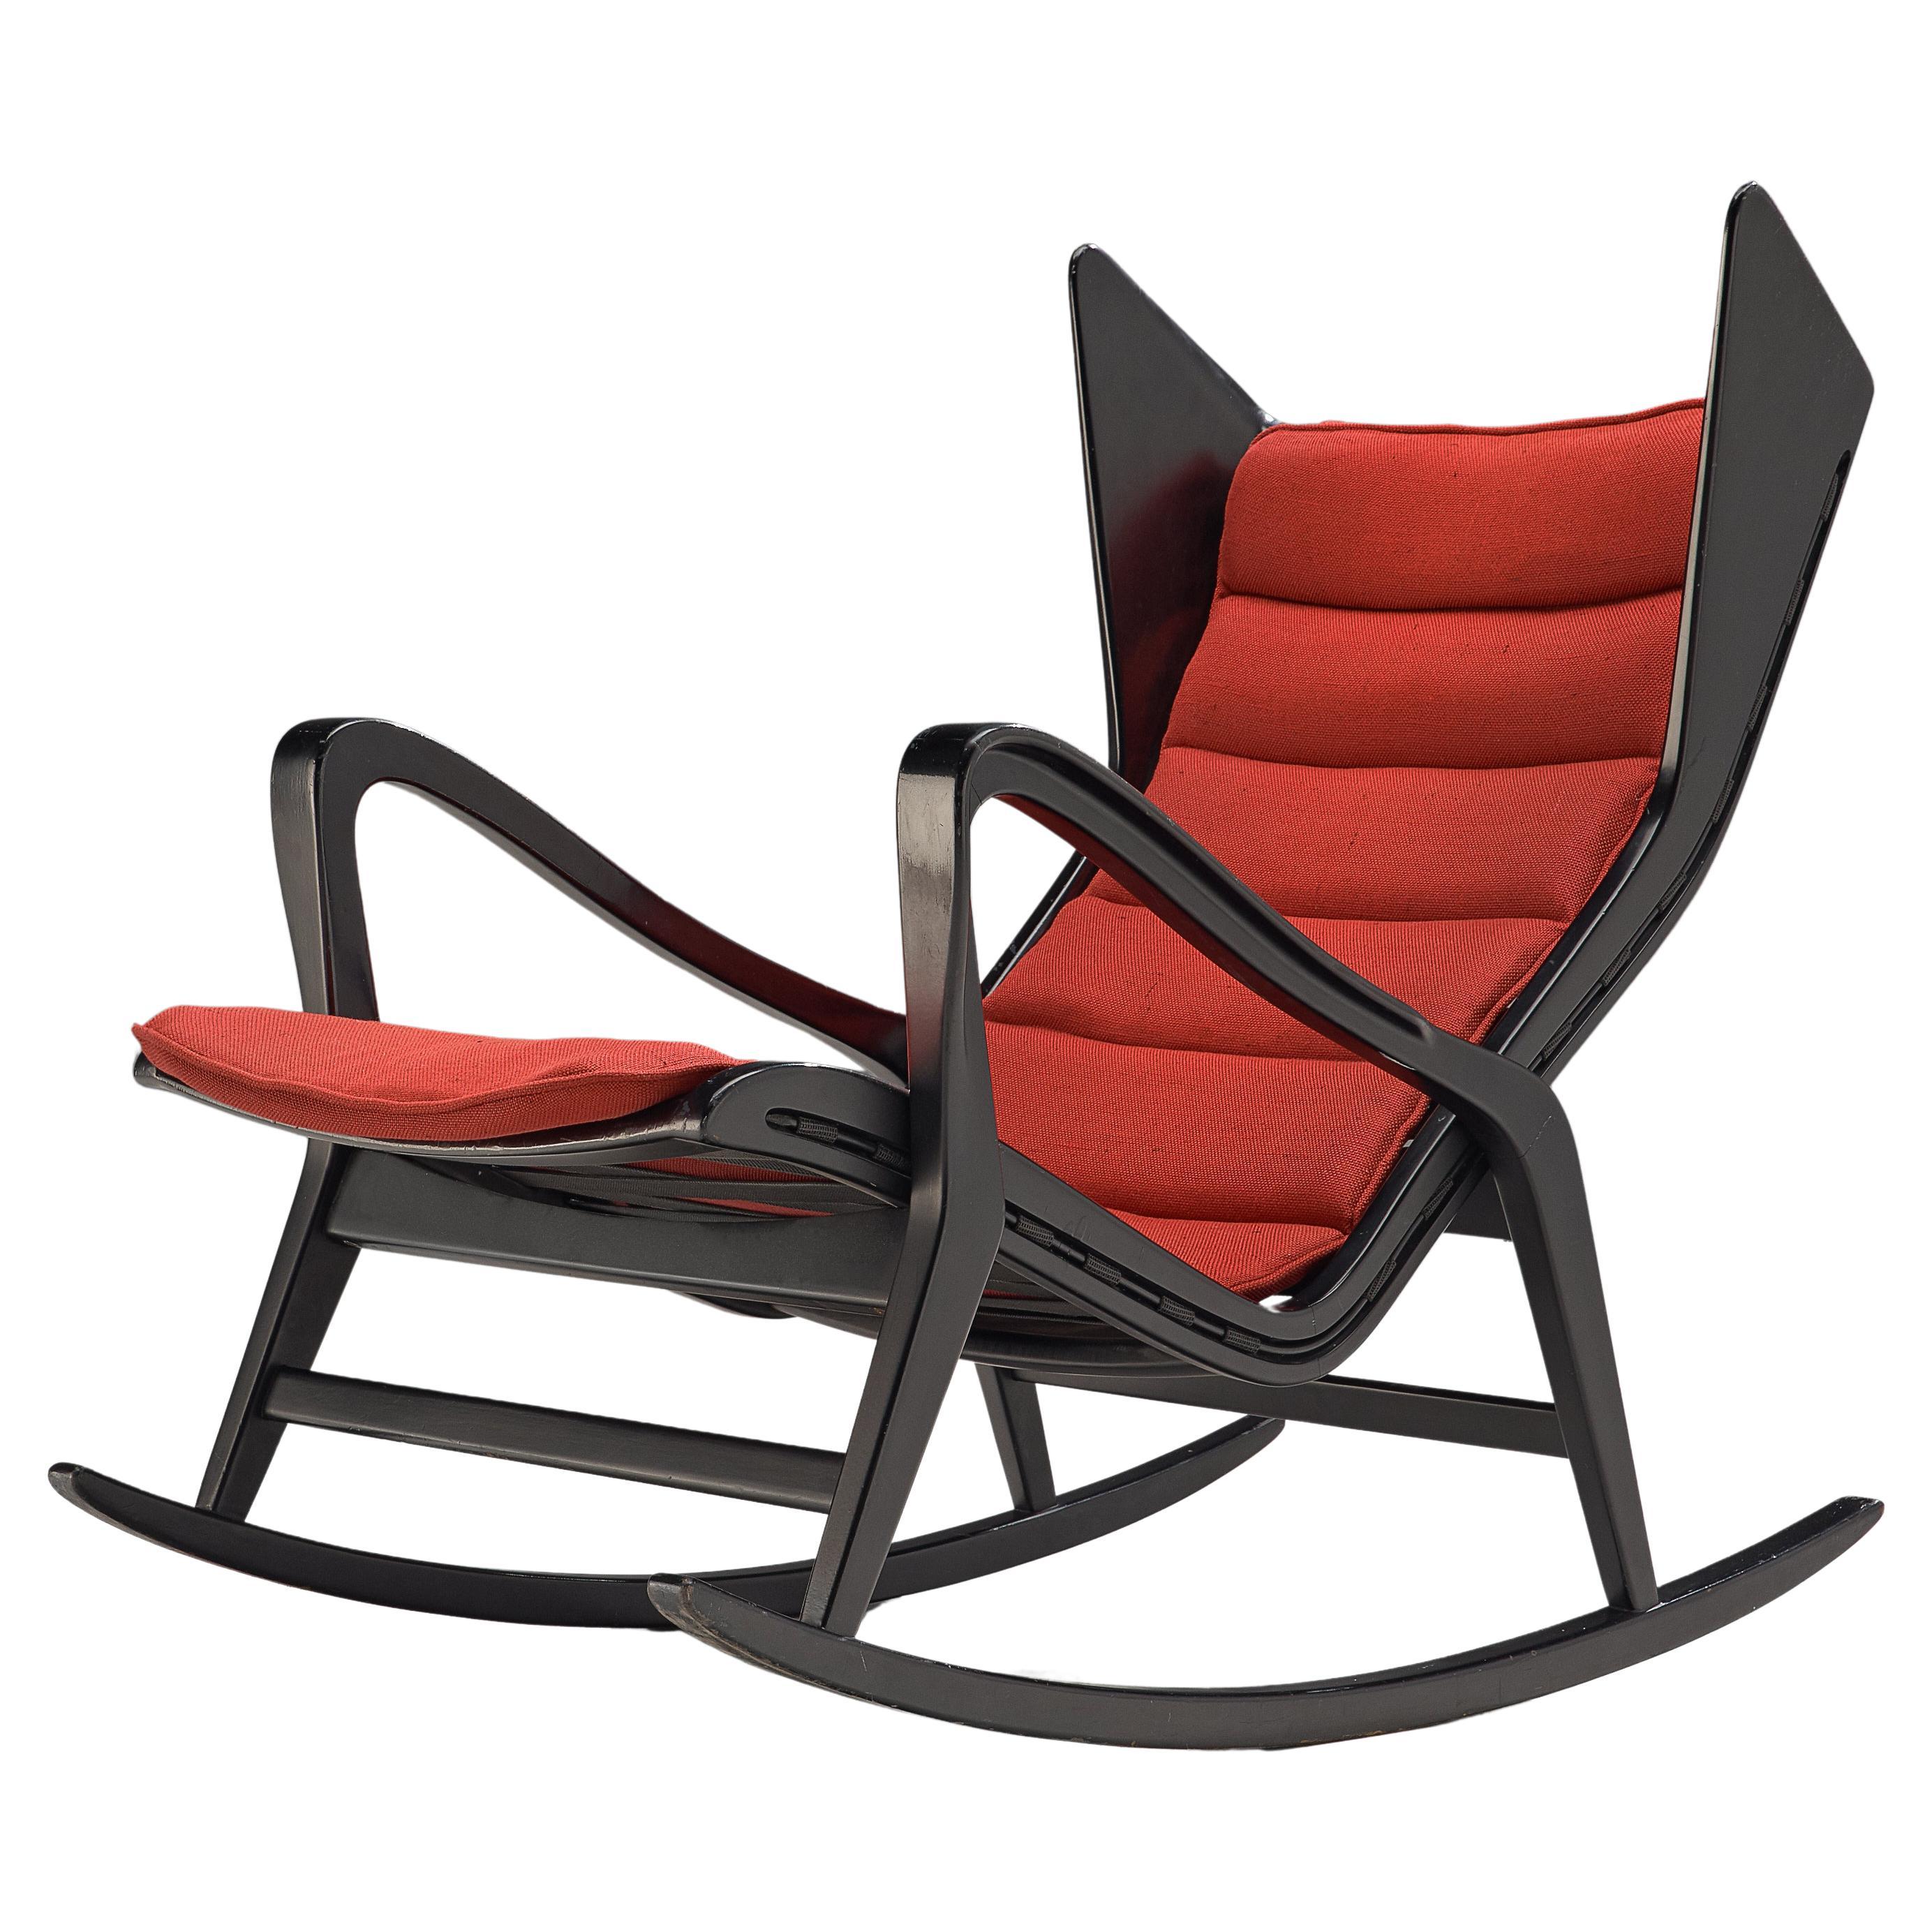 Studio Cassina: Stuhl „572 Schaukel“ aus ebonisiertem Holz und roter Polsterung